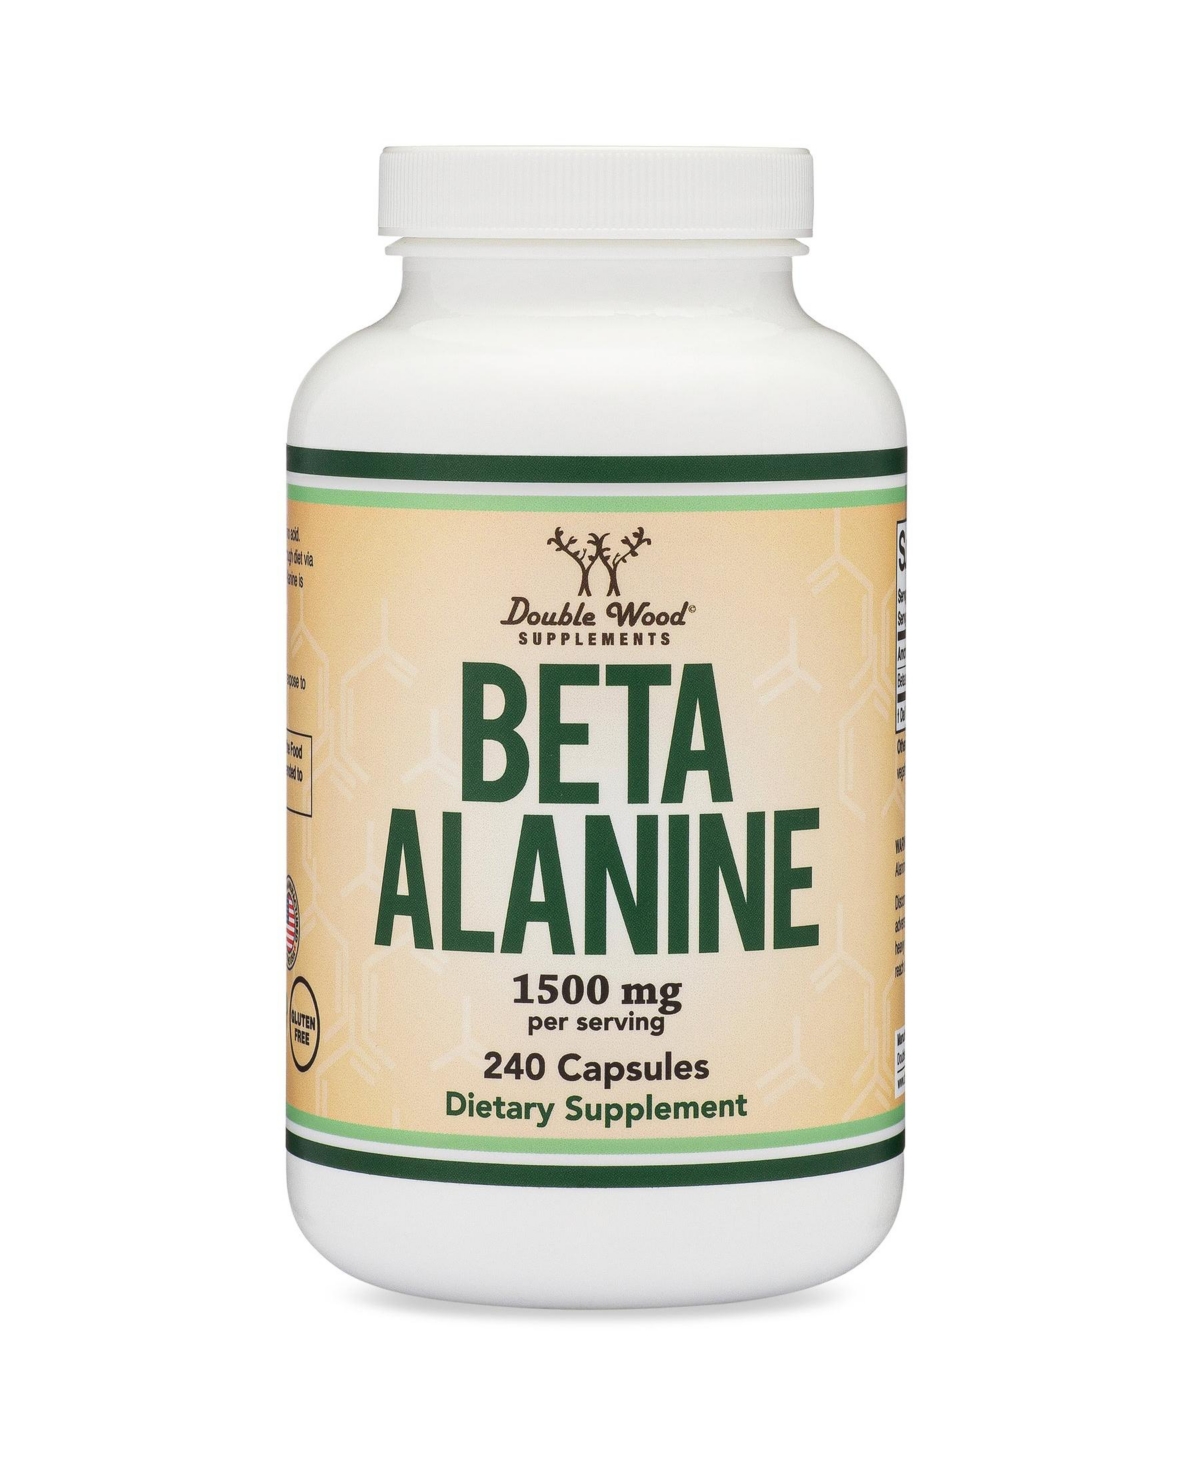 Beta Alanine - 240 capsules, 1500 mg servings